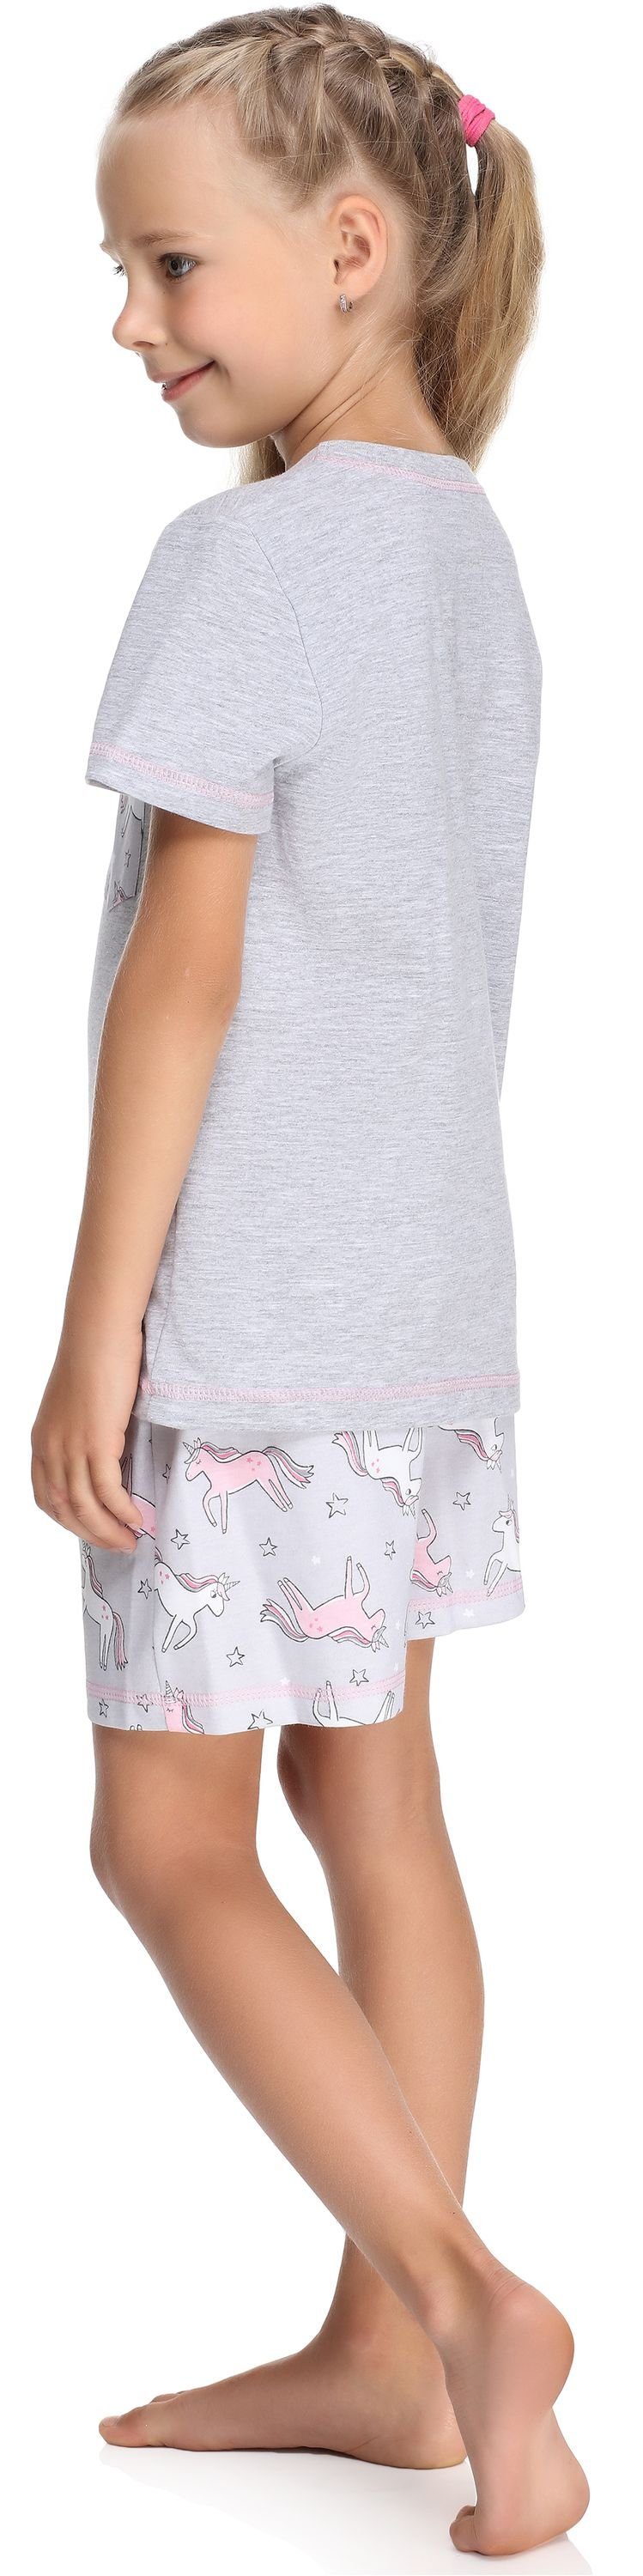 Merry Style Schlafanzug Mädchen Schlafanzüge aus Set Kurz Melange/Einhorn Baumwolle Pyjama MS10-292